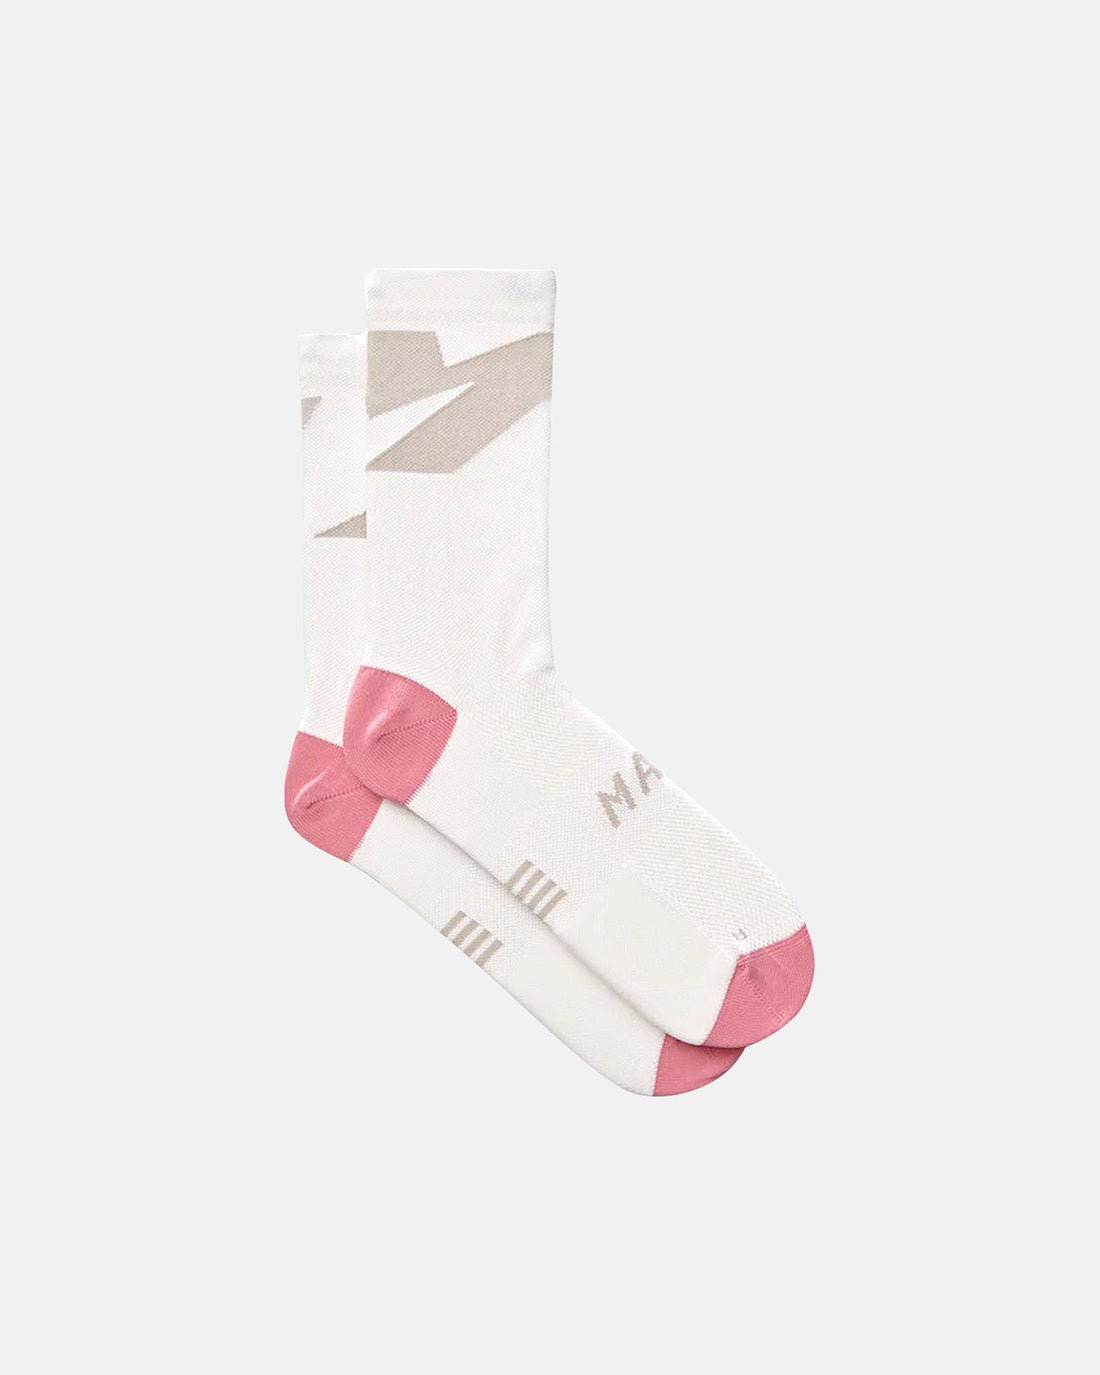 Evolve Sock - White - MAAP